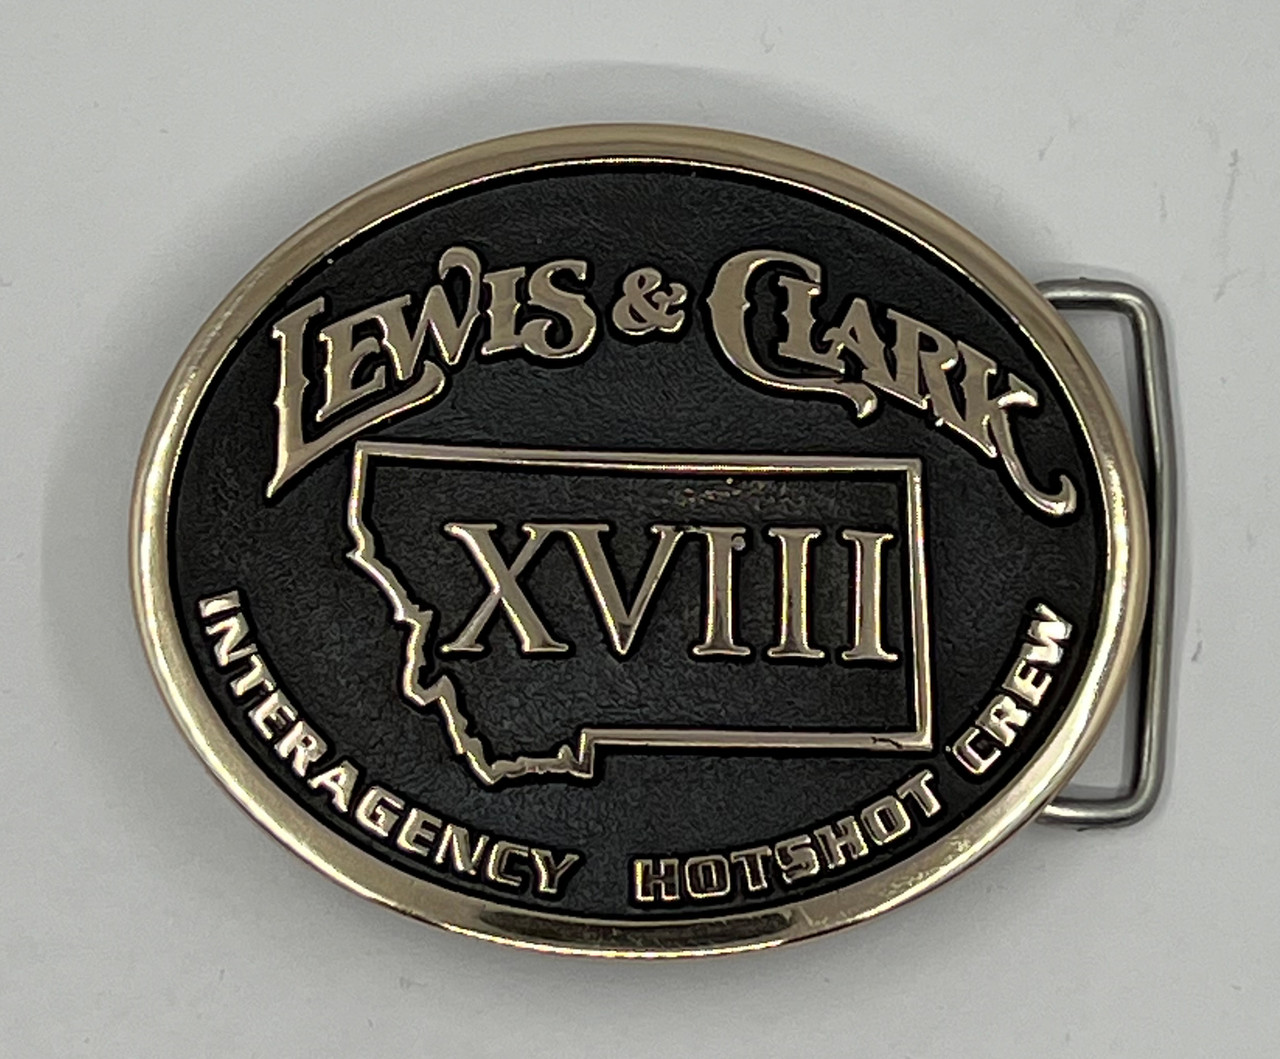 Lewis & Clark Interagency Hotshot Crew XVIII (18) Buckle (RESTRICTED)